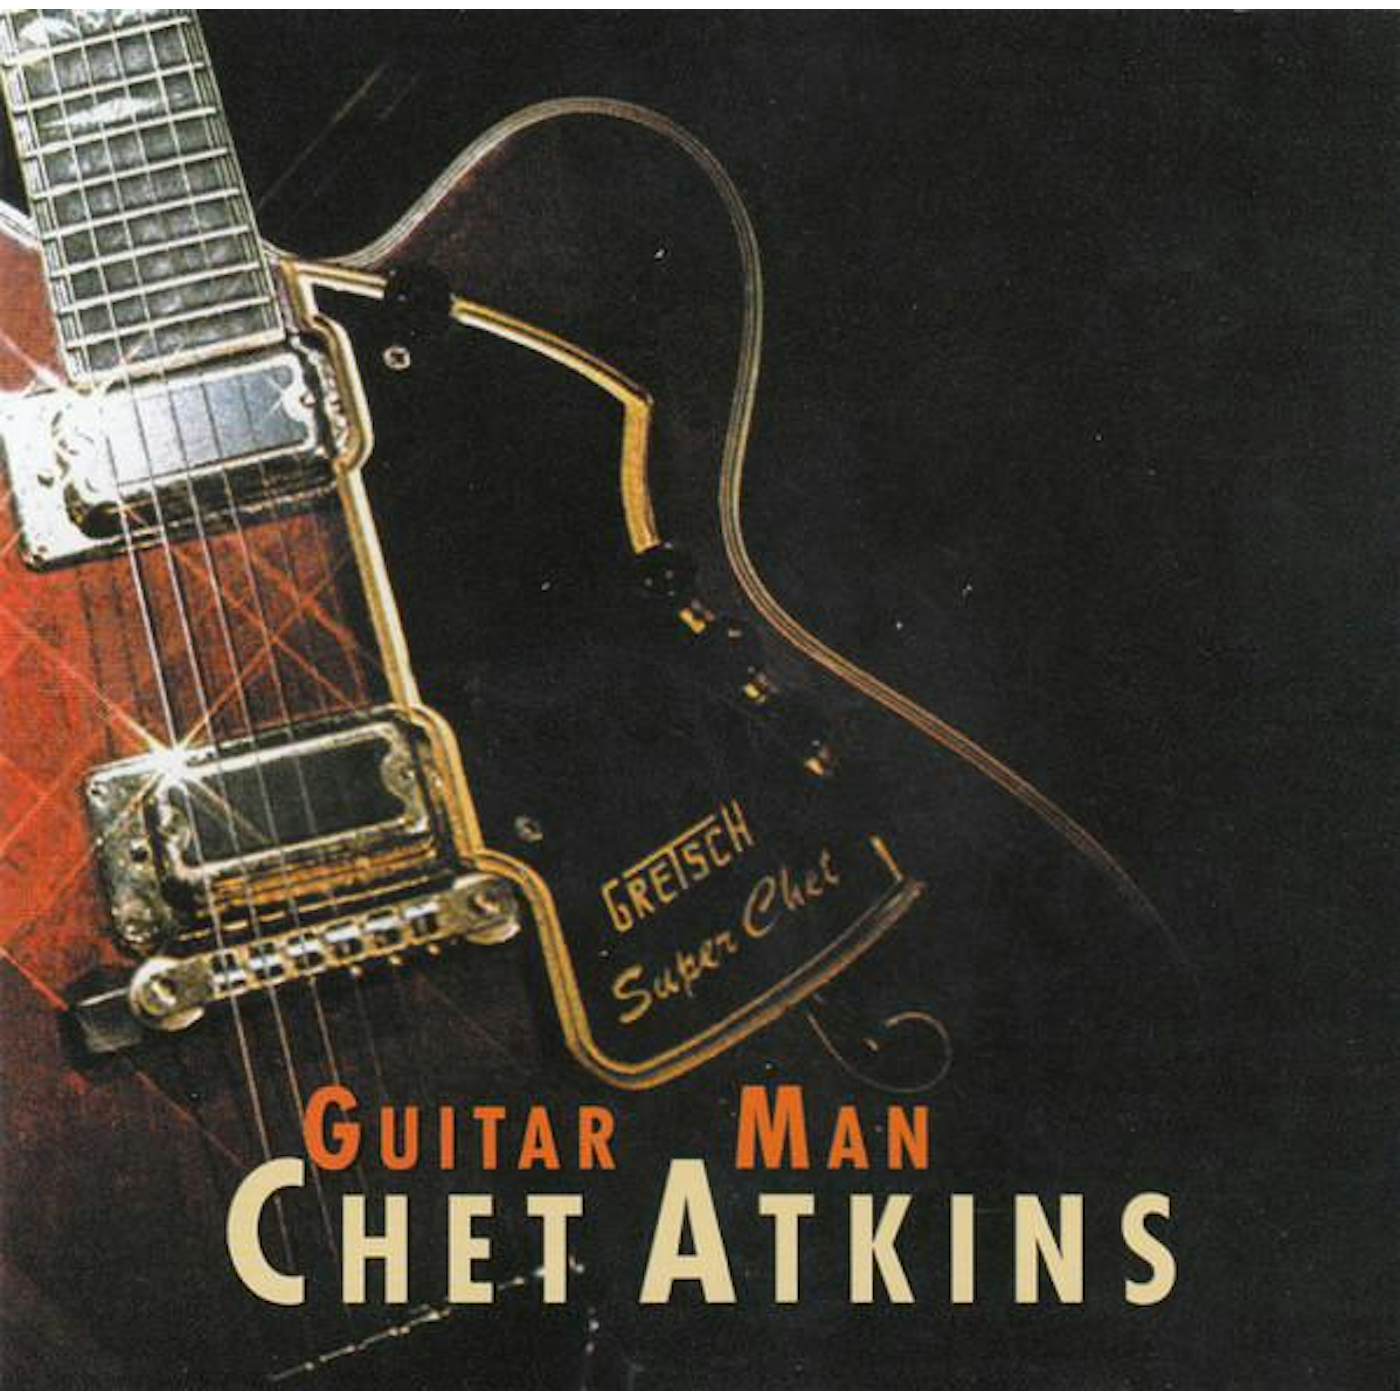 Chet Atkins GUITAR MAN CD